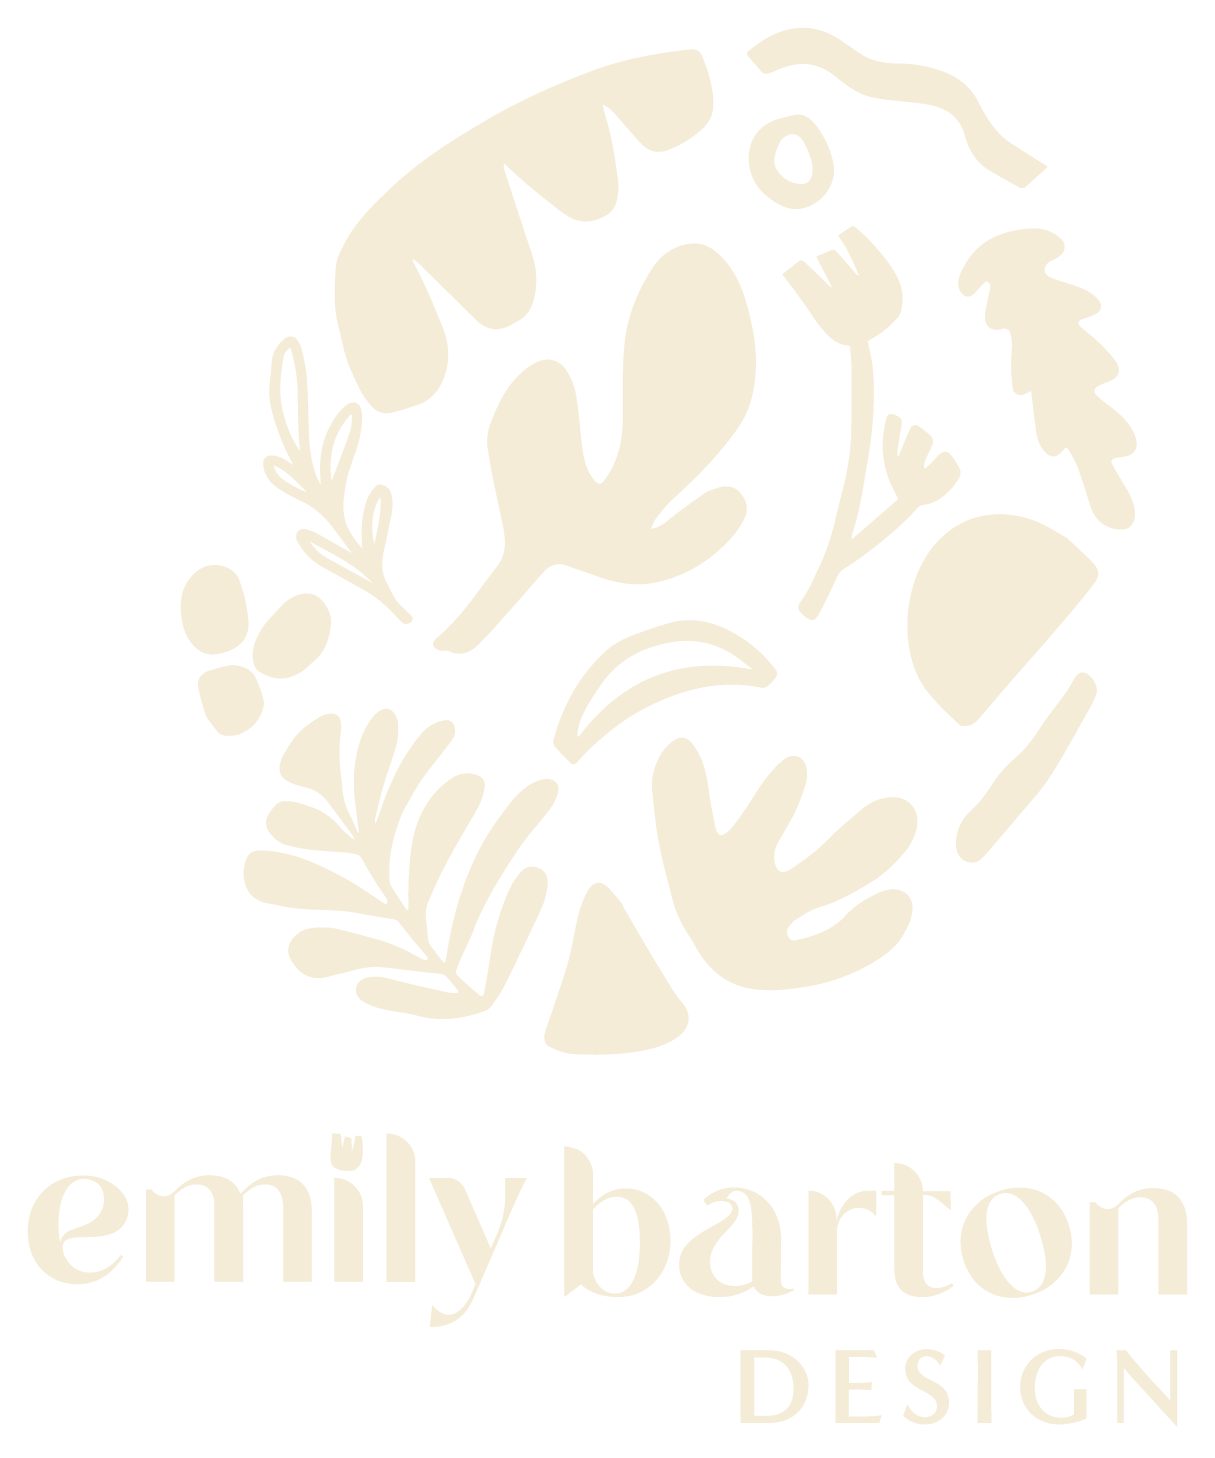 Emily Barton Design 